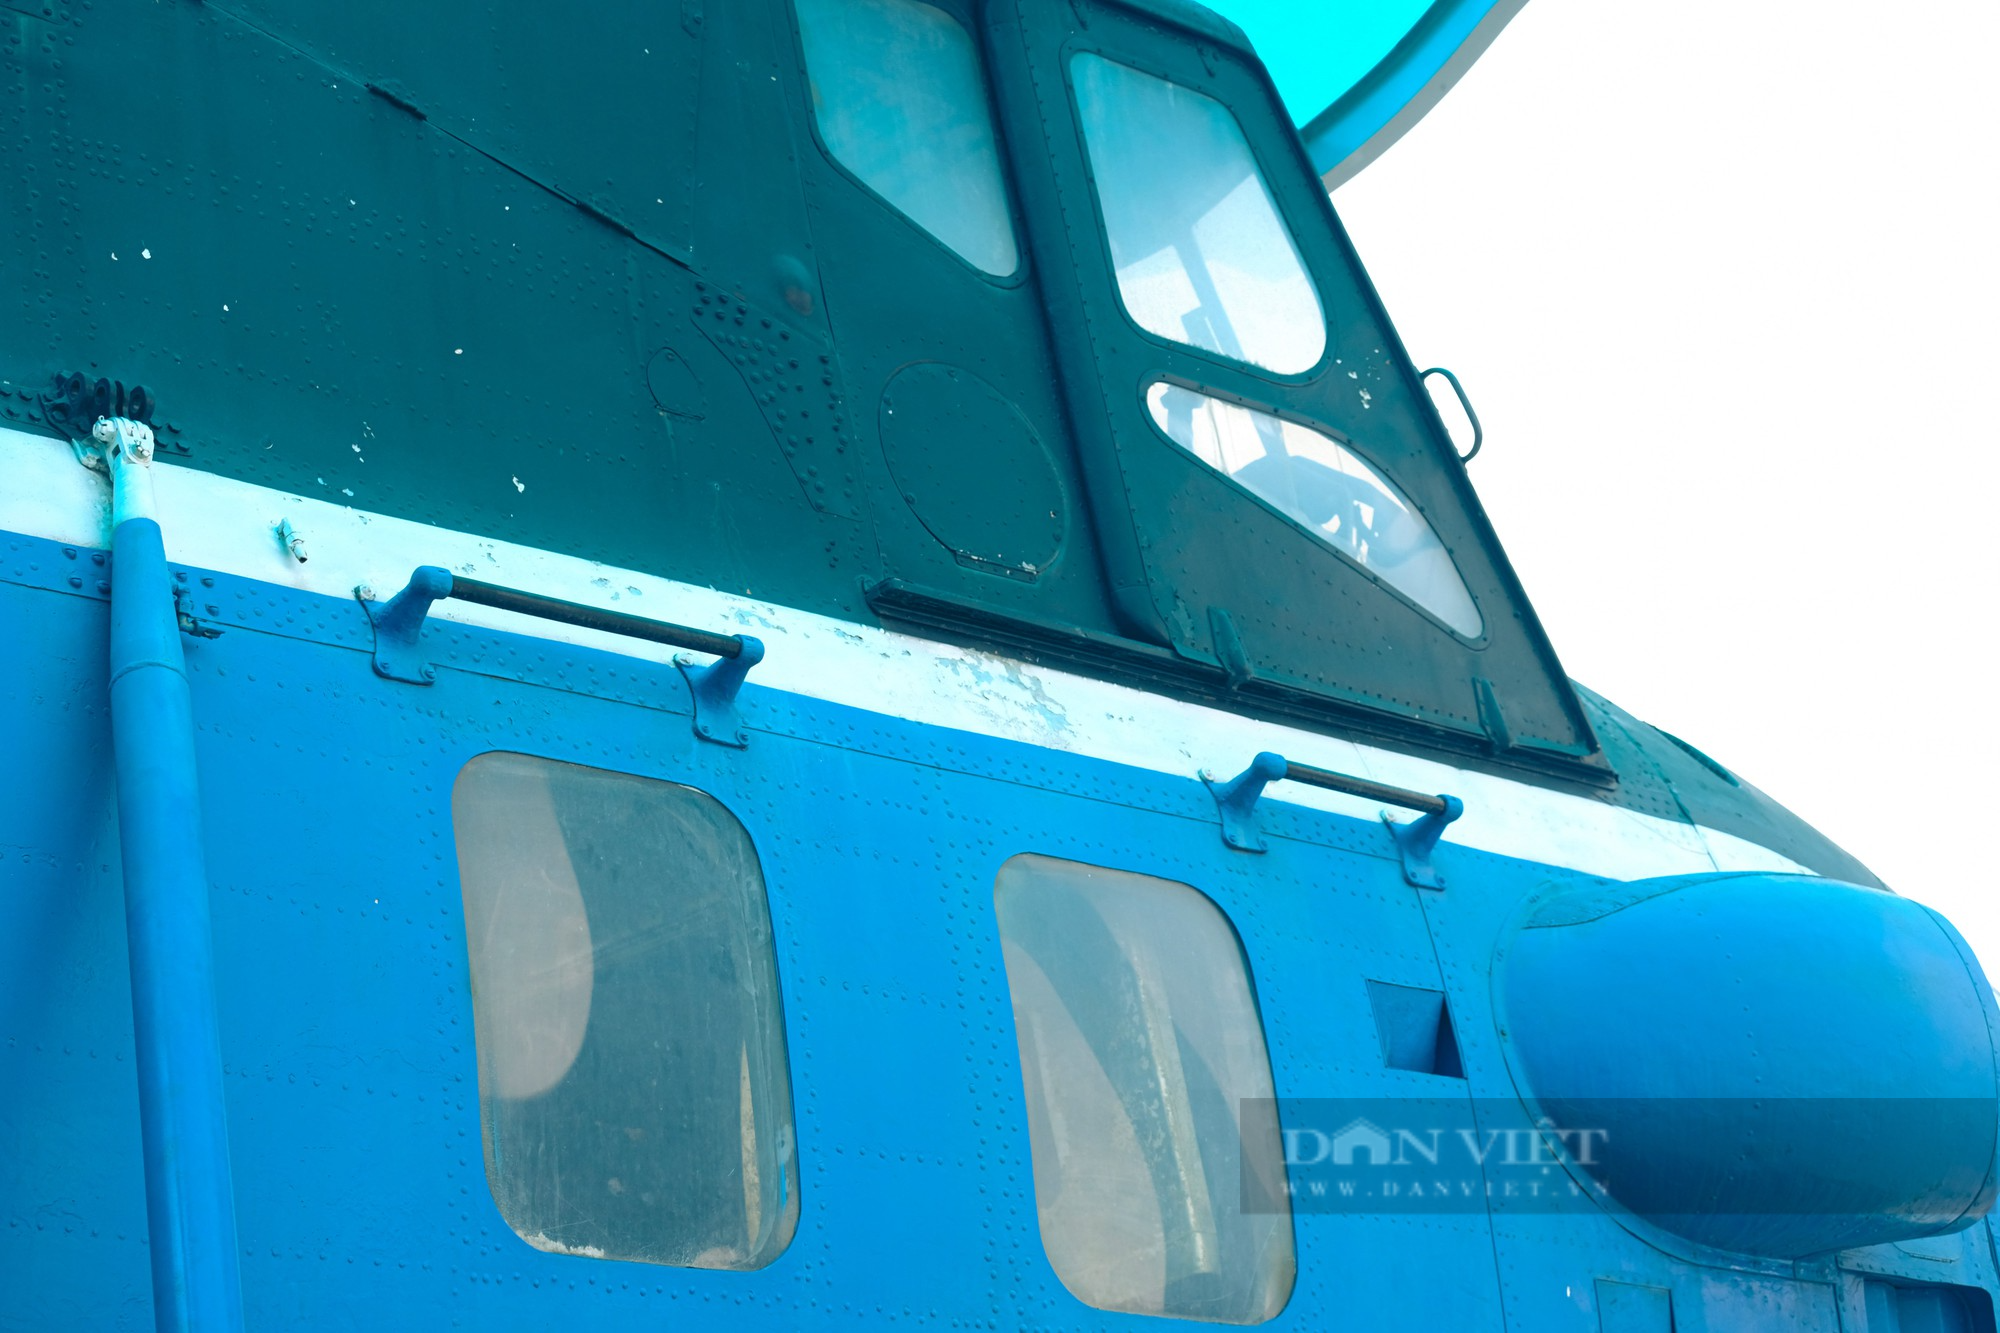 Trực thăng vận tải Mi-4 từng tháp tùng Bác Hồ đi công tác nhìn ra sao? - Ảnh 5.